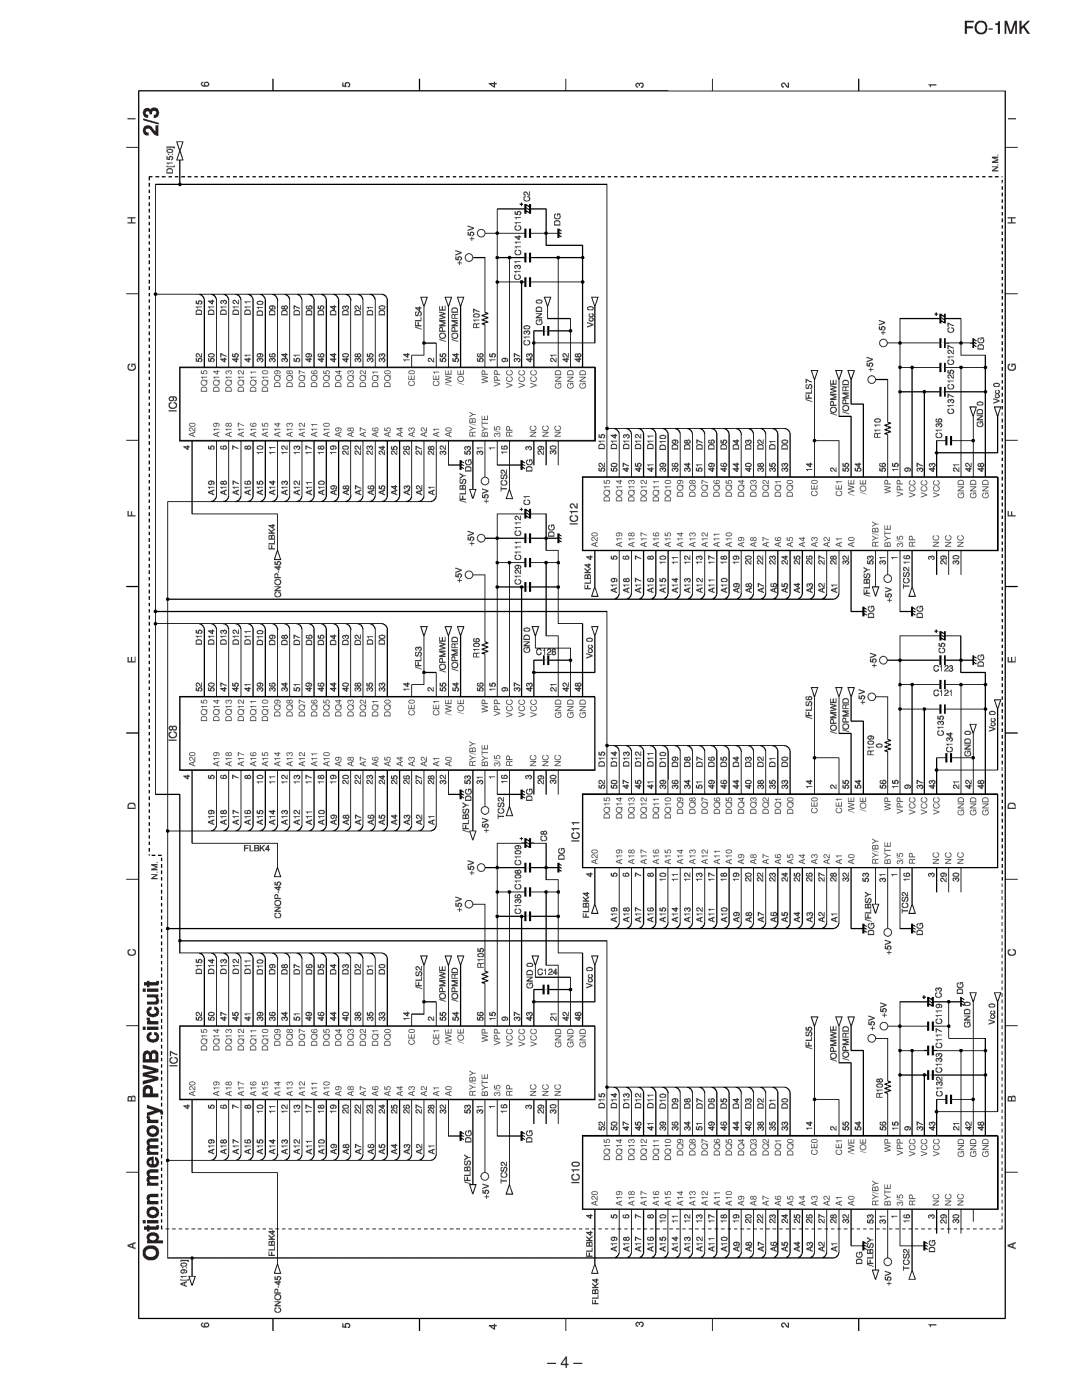 Sharp FO-1MK service manual Option memory PWB circuit, C124, C128 